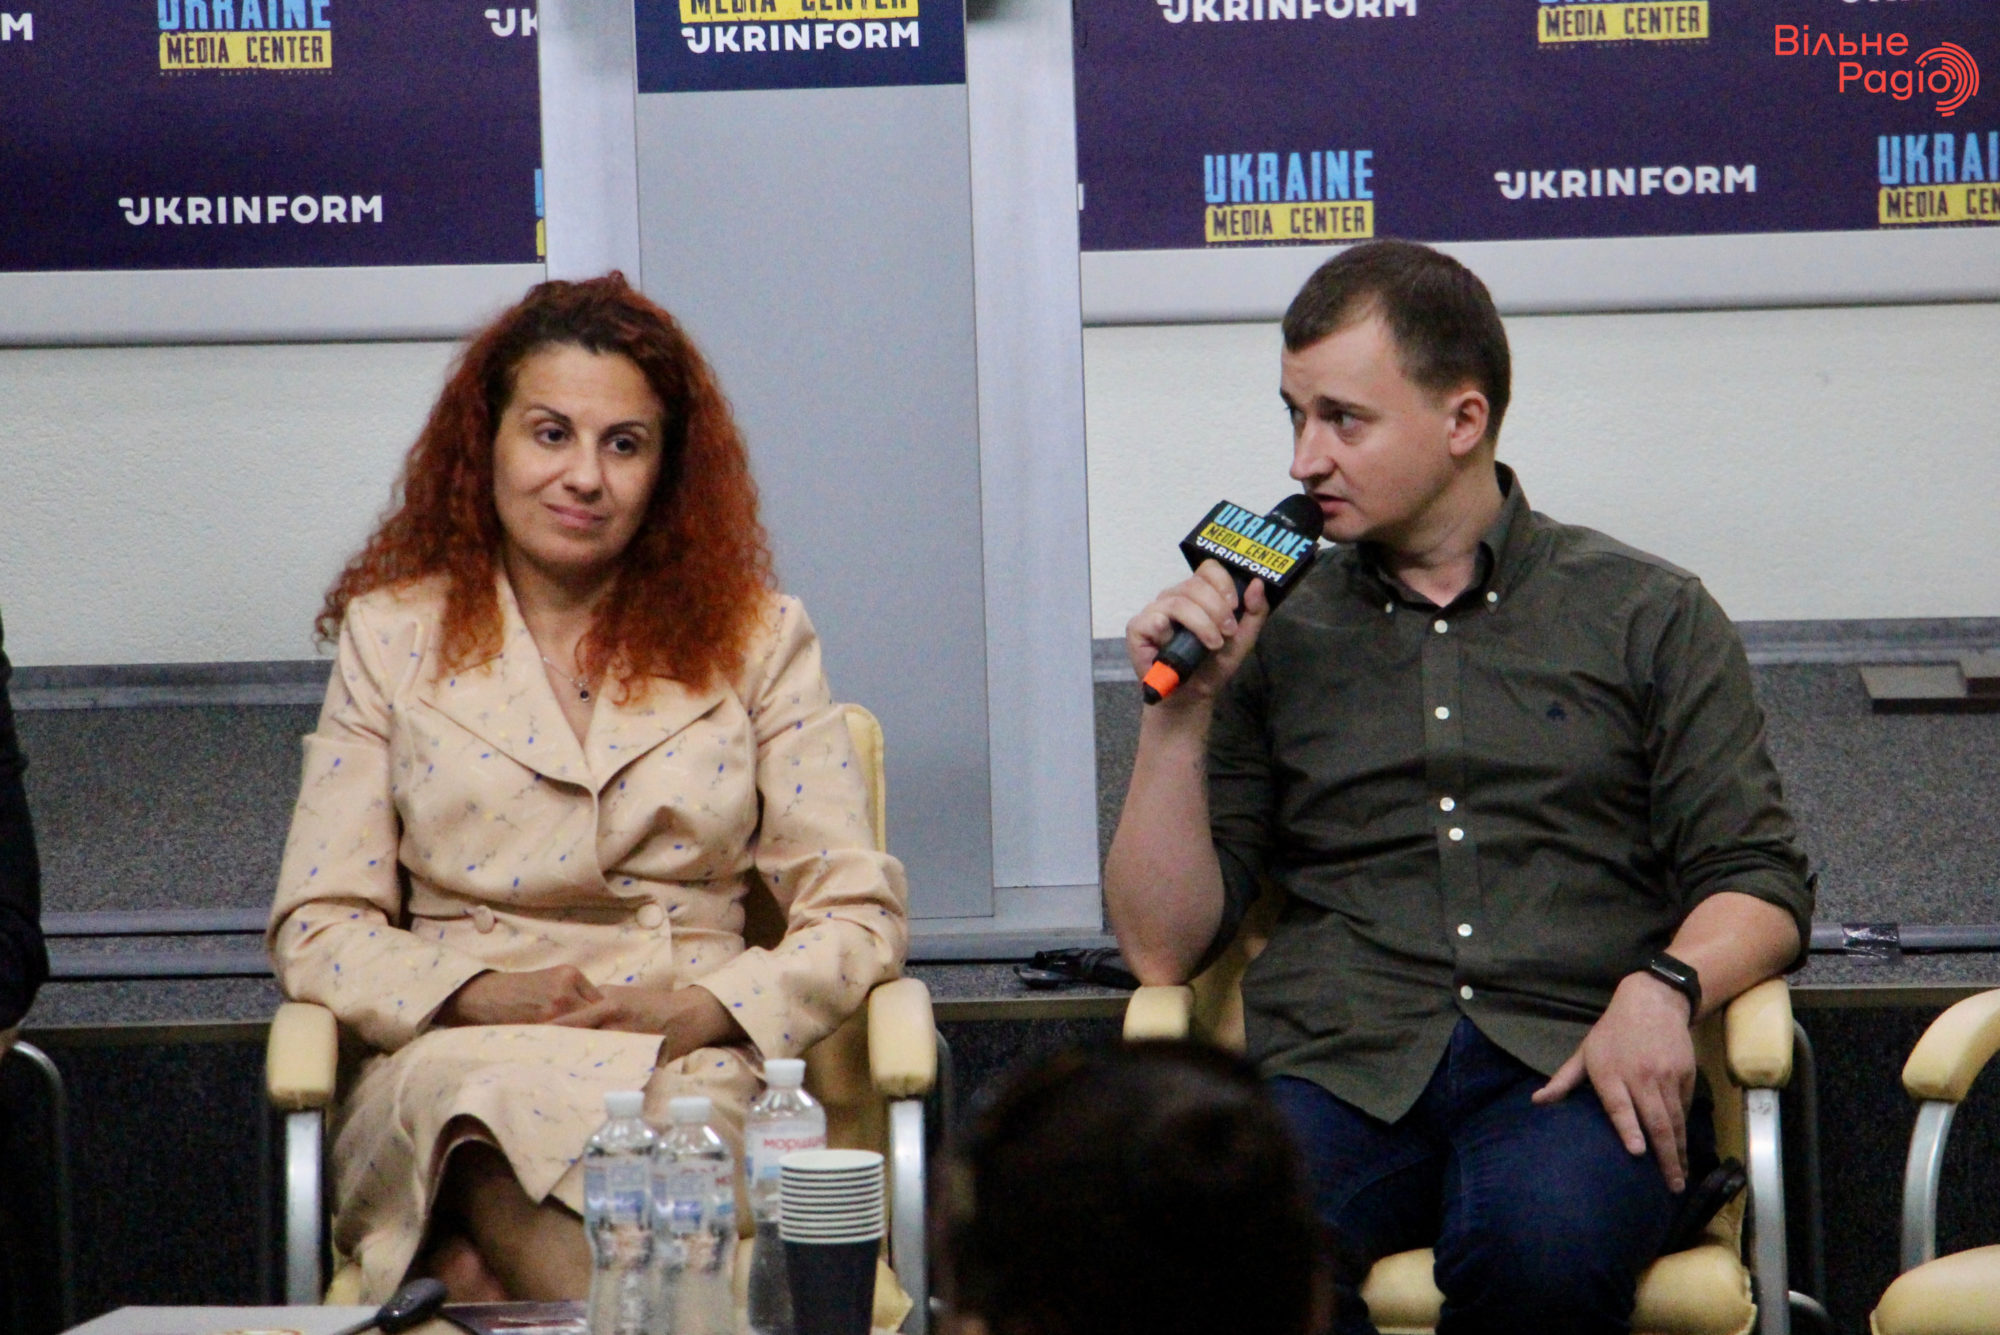 Форум “Уважение. Опыт. Перспектива", Киев, 27 июня